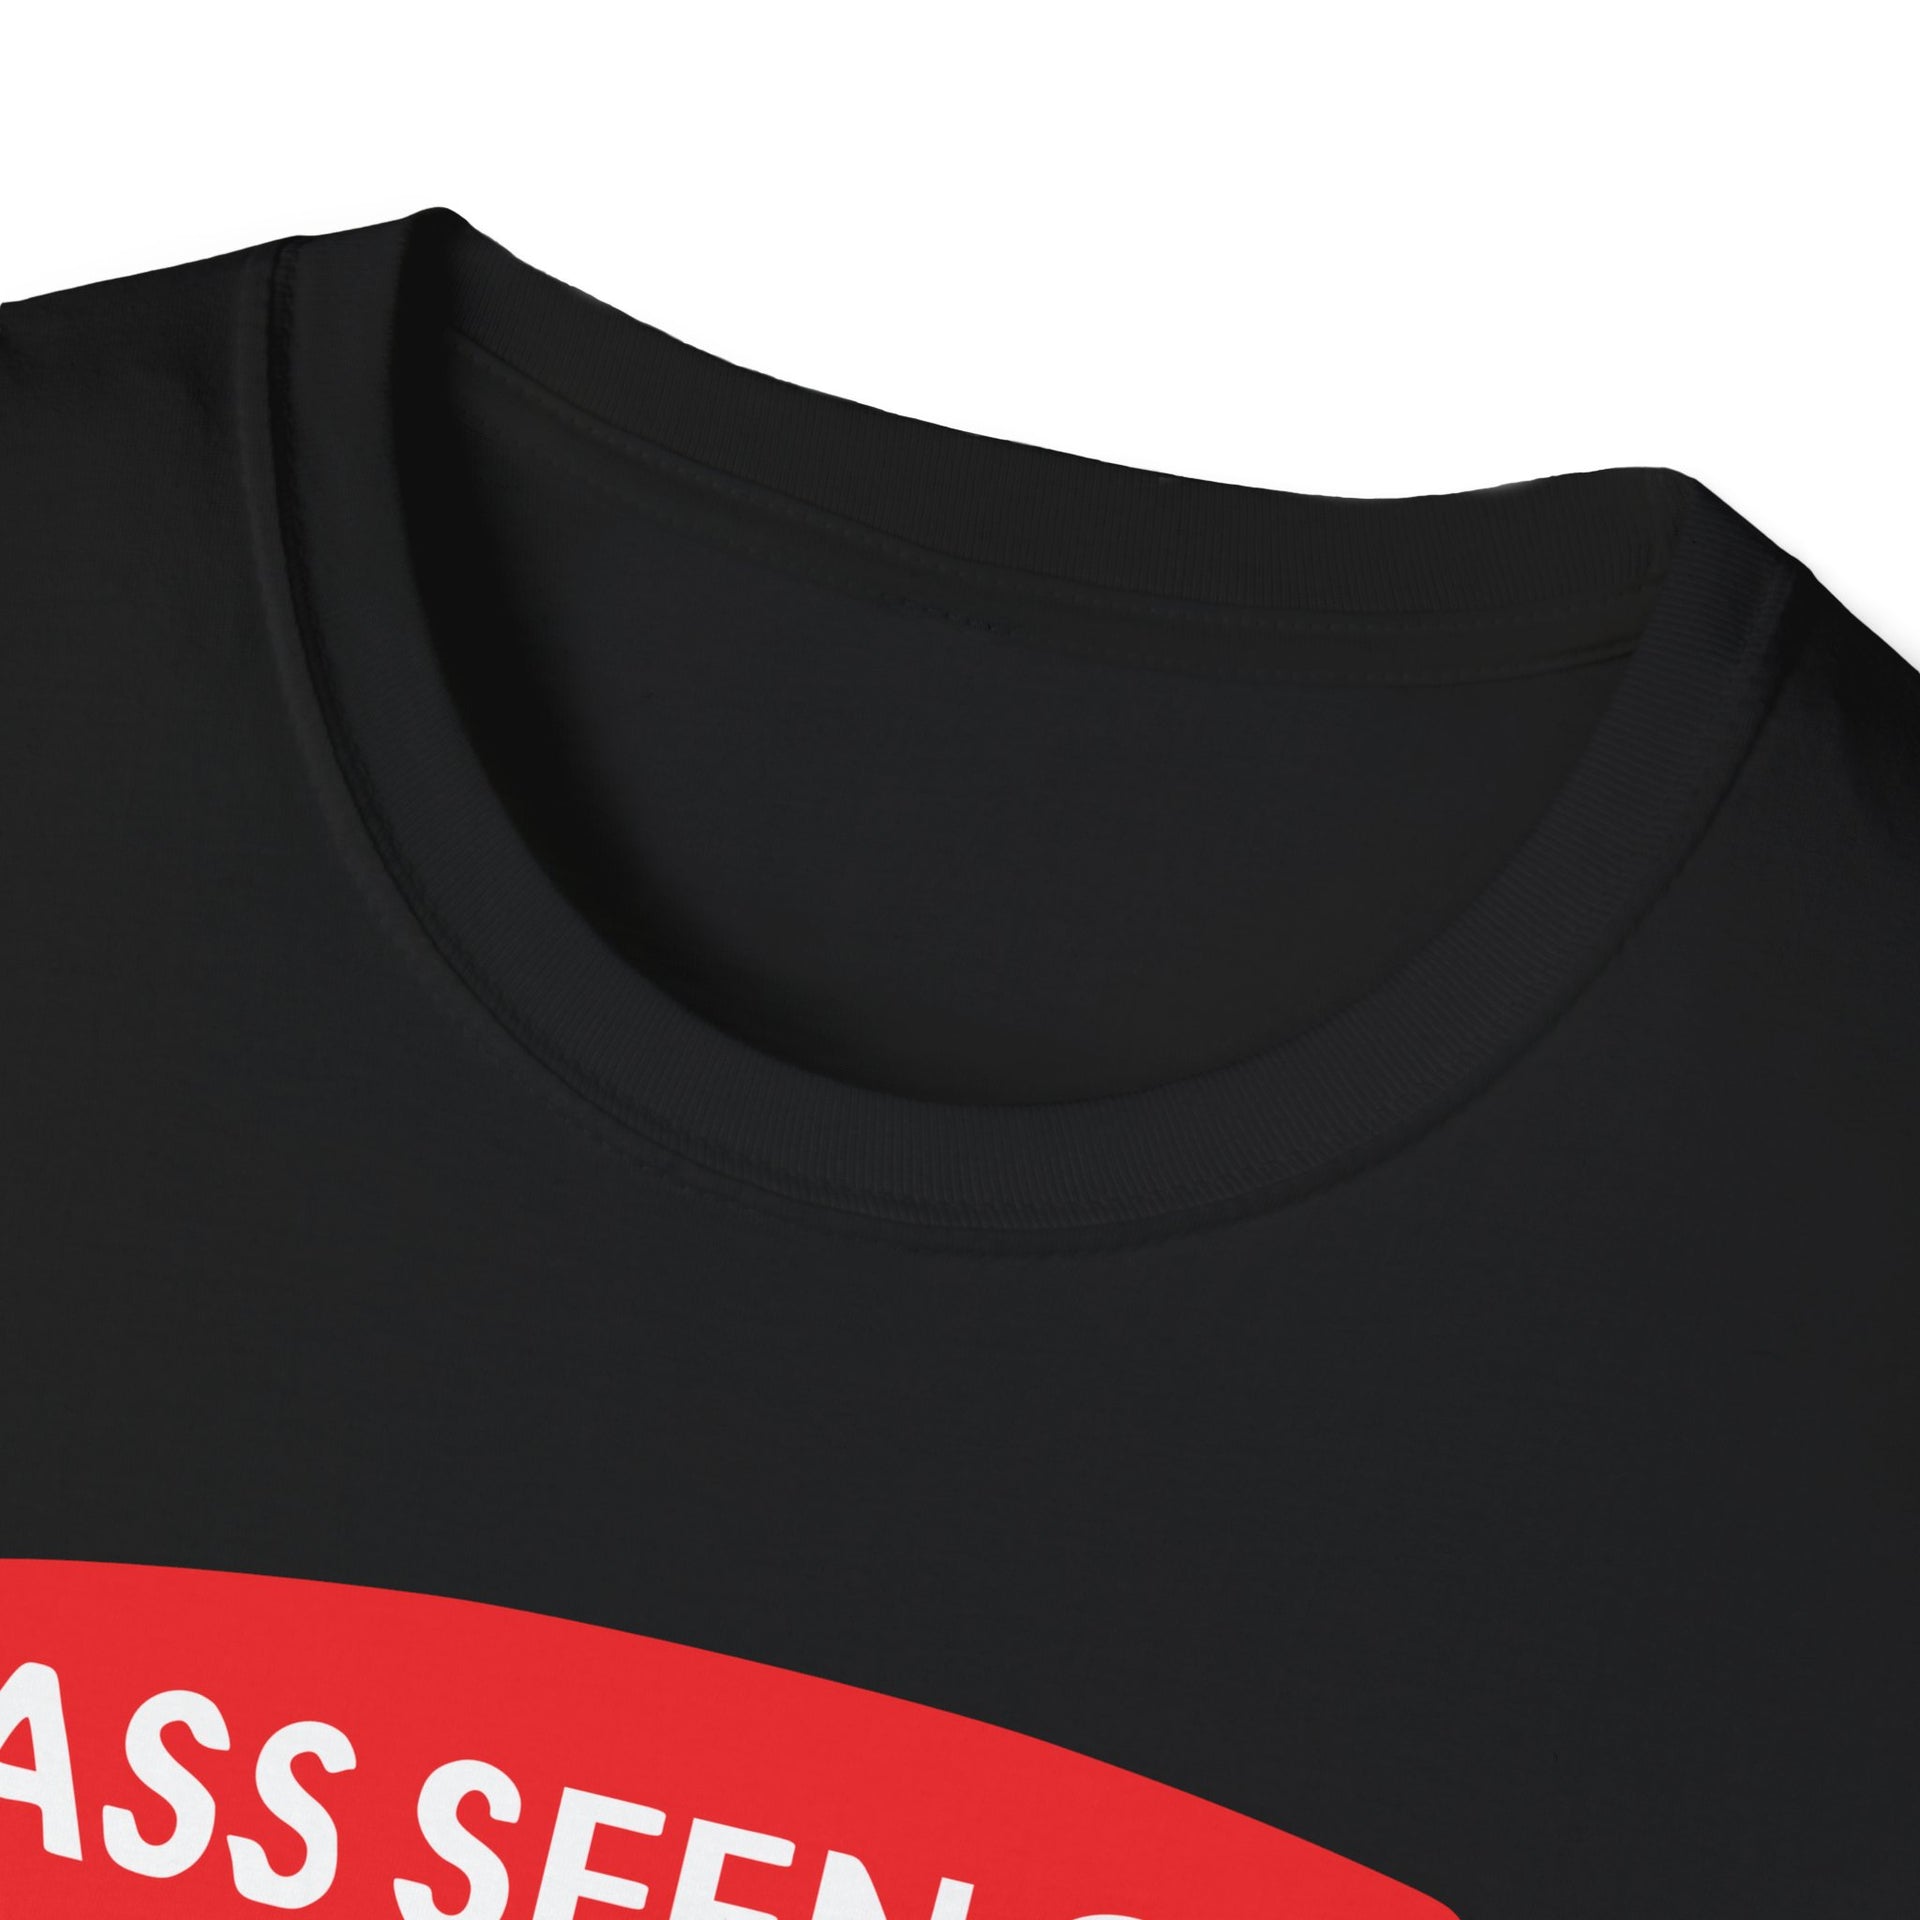 Ass Seen on TV Unisex Softstyle T-Shirt